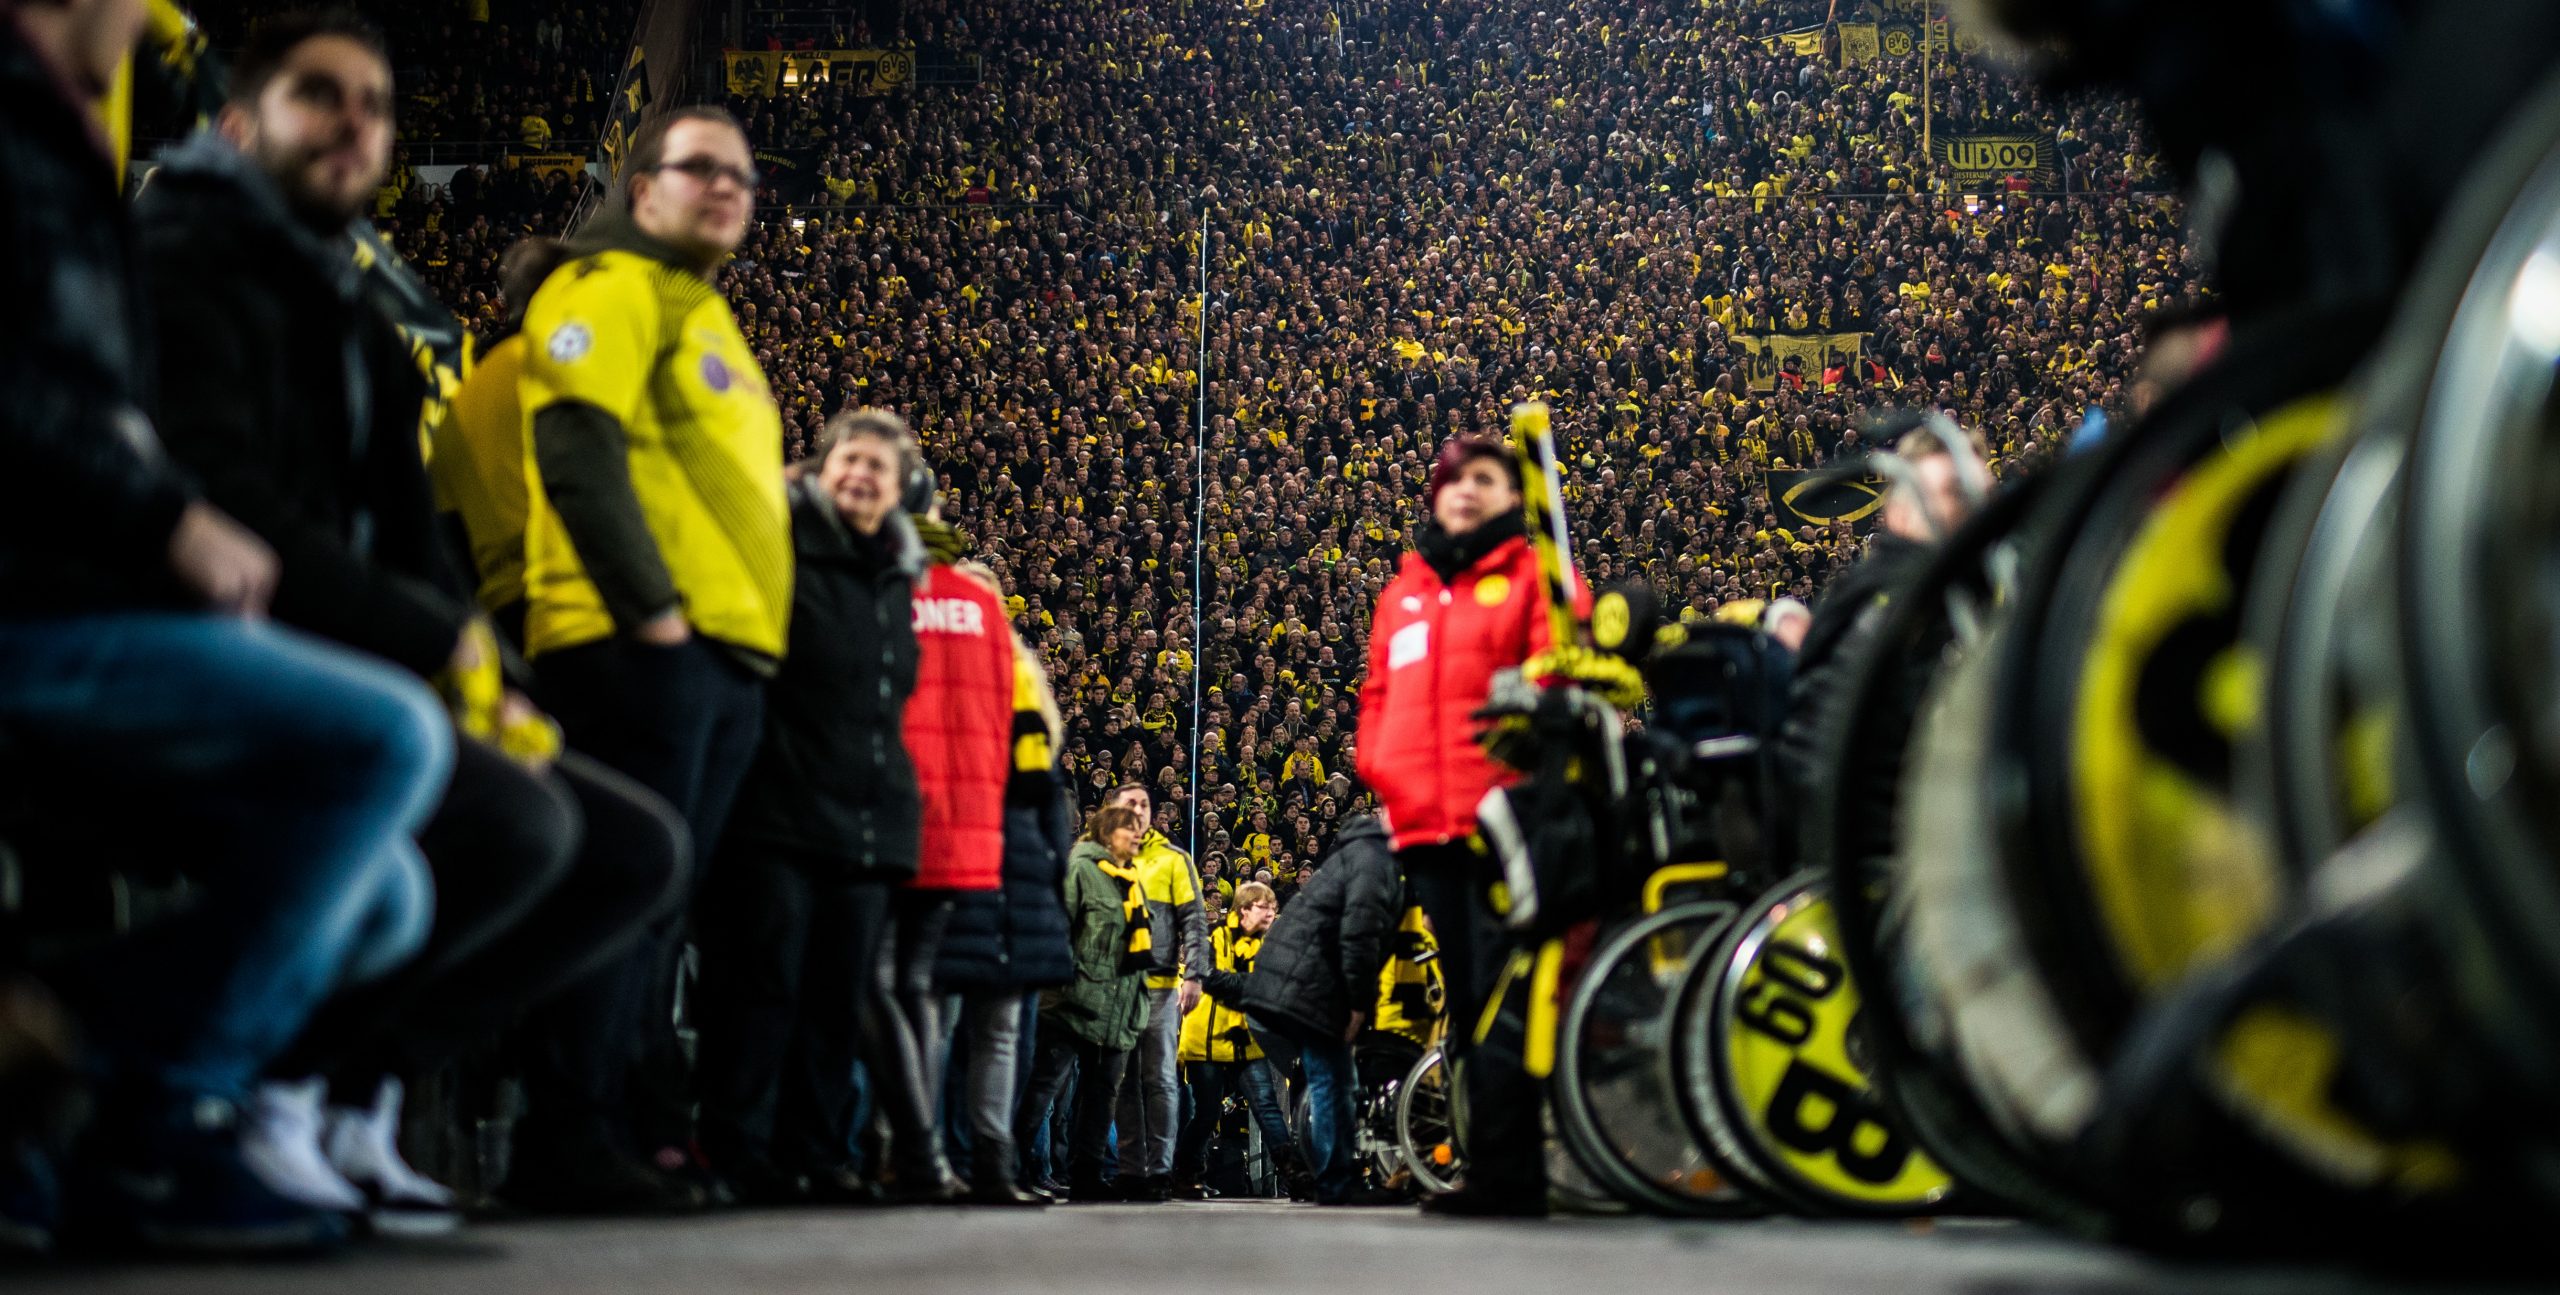 Stehende BVB-Fans links im Bild, in der Mitte ein Gang im Stadion und Ordner*innen, rechts BVB-Fans im Rollstuhl.